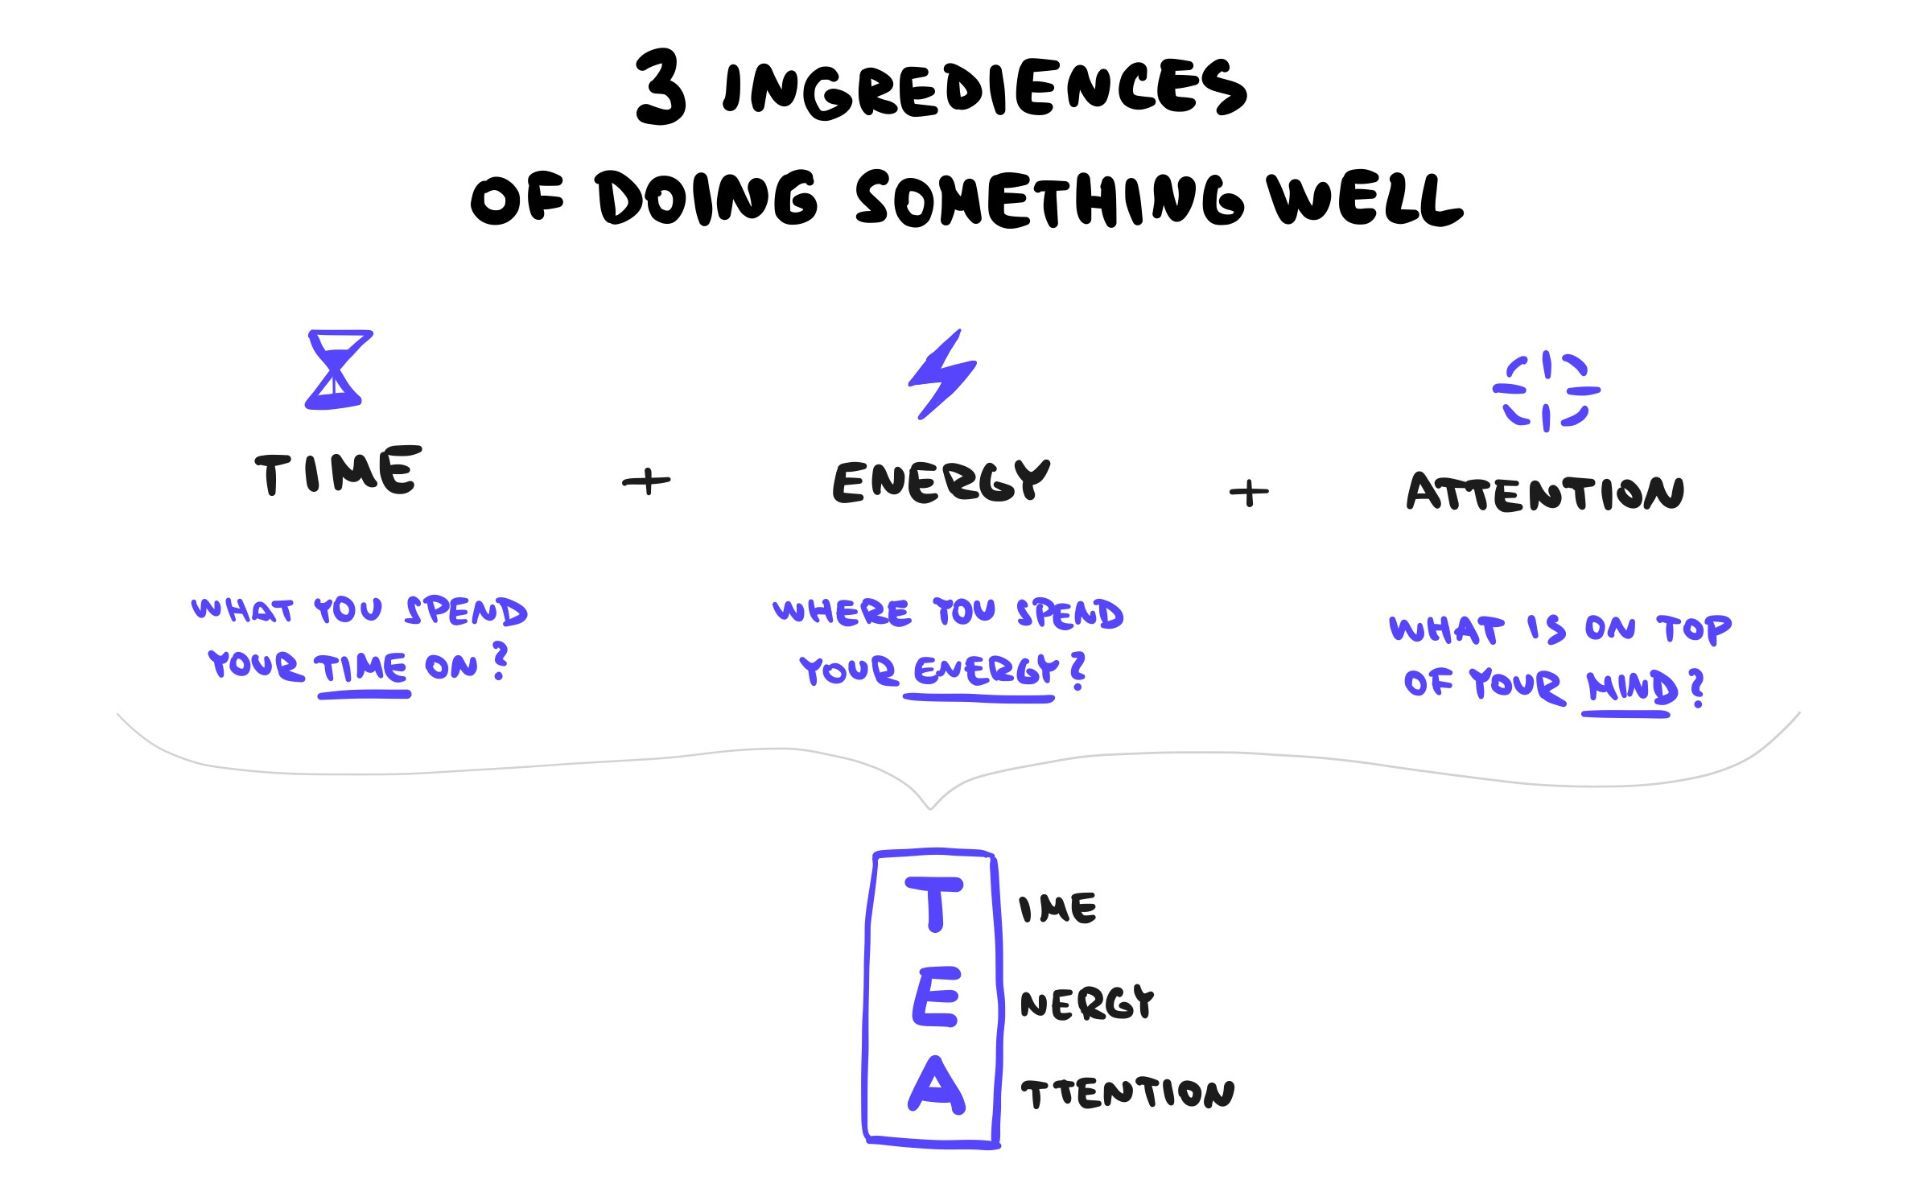 3 ingredients of a good TEA